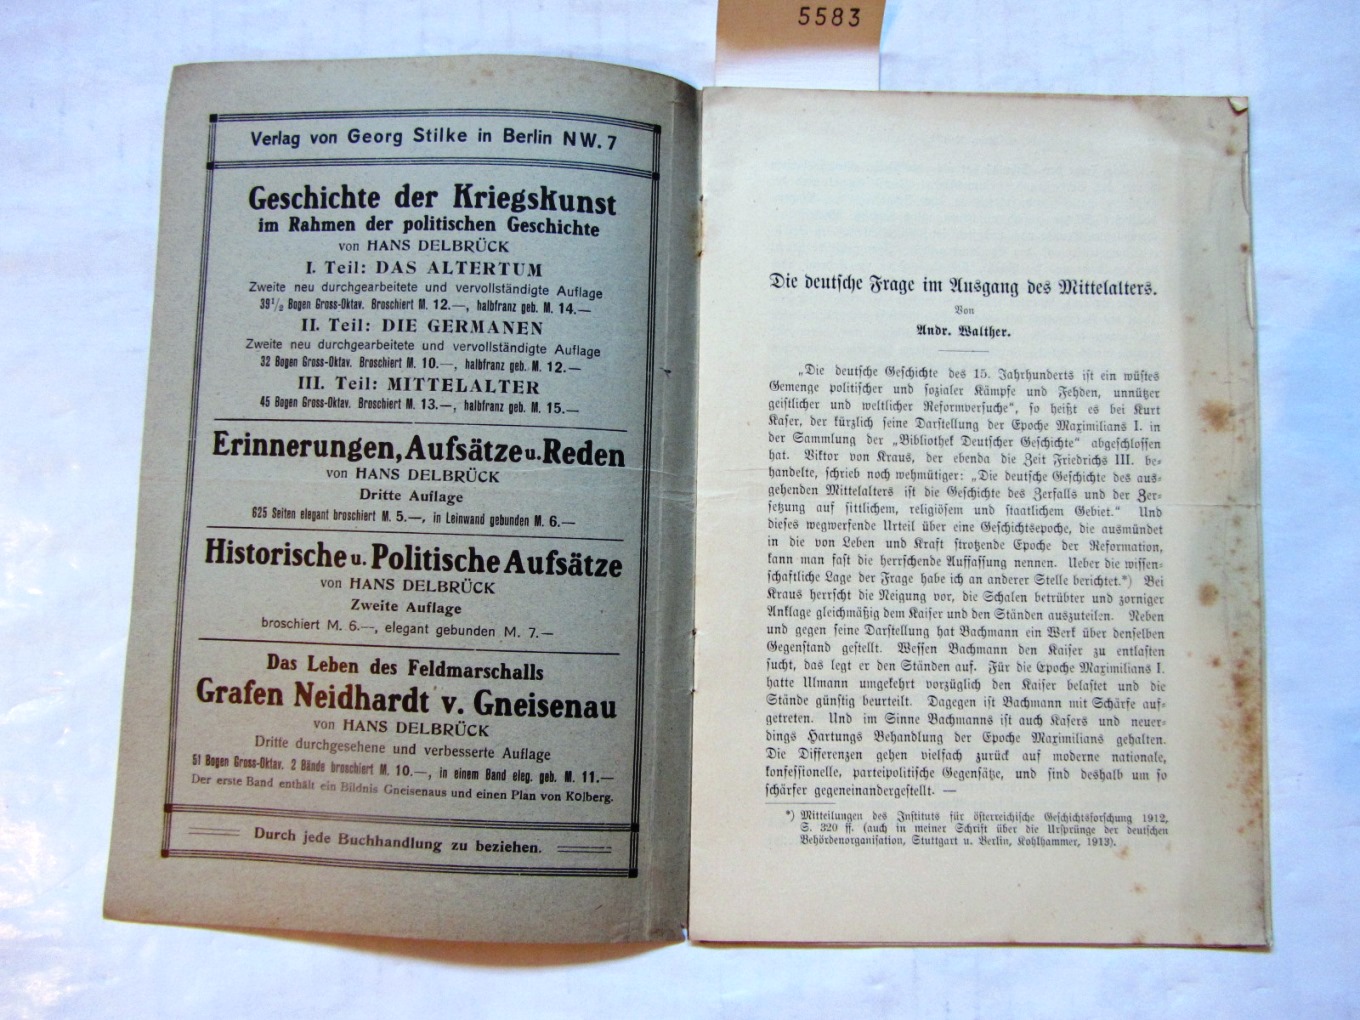 Walther, Andr.:  Die deutsche Frage im Ausgang des Mittelalters. Sonderabdruck aus den Preußischen Jahrbüchern. Bd. 152, Heft 1. 